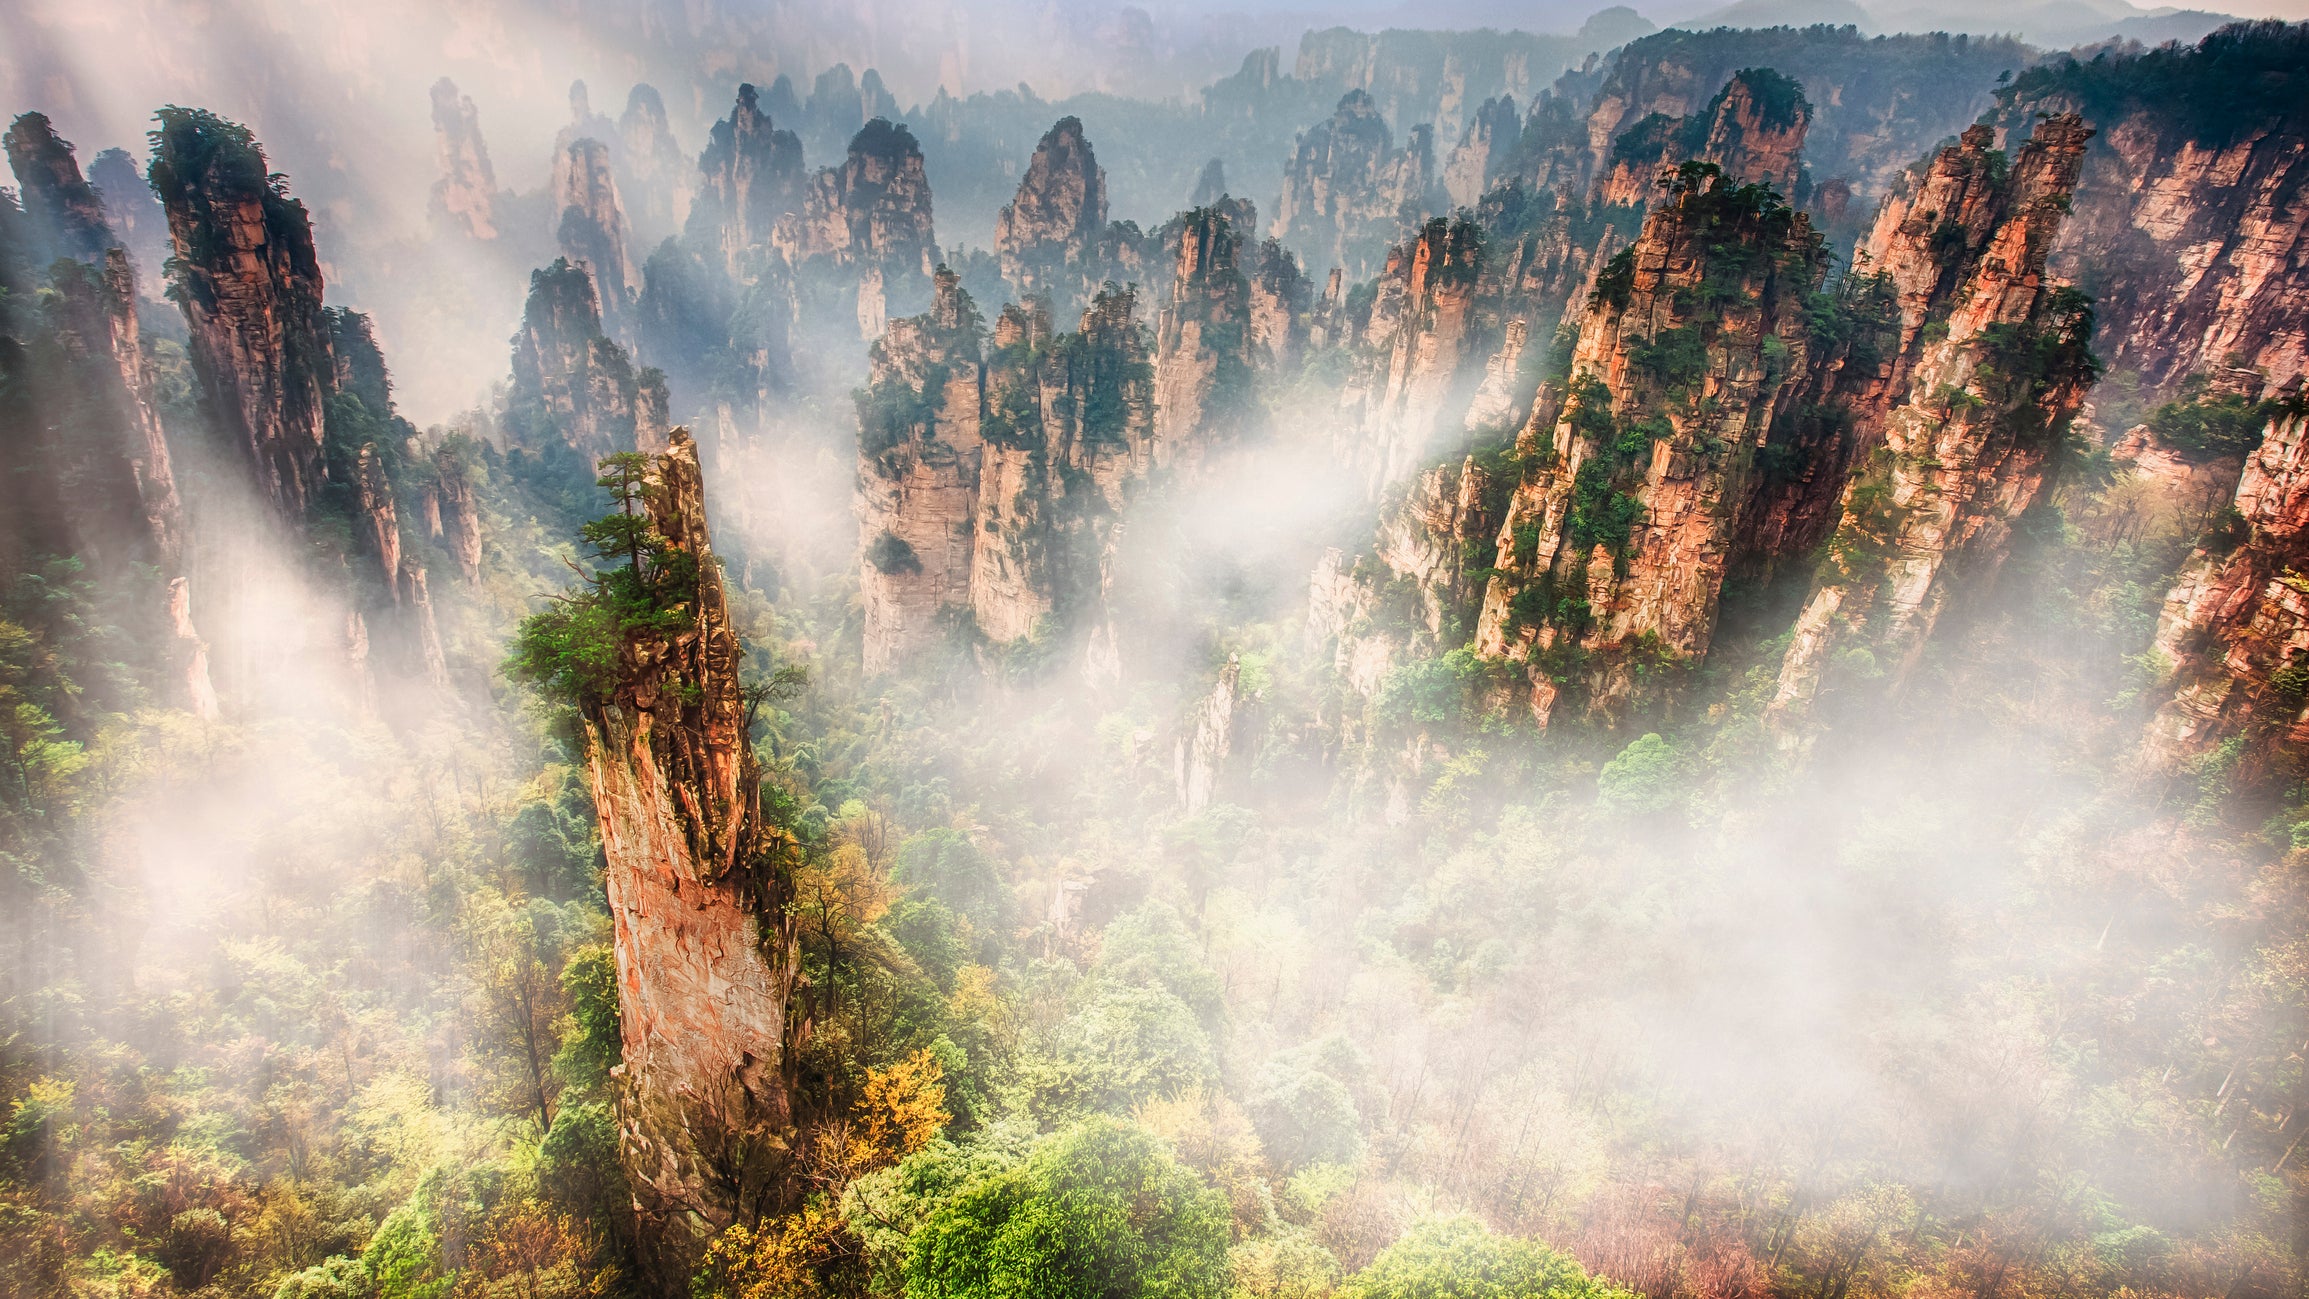 Avatar Mountain  Wulingyuan Scenic Area Zhangjiajie China Amazing  Places 4K  YouTube